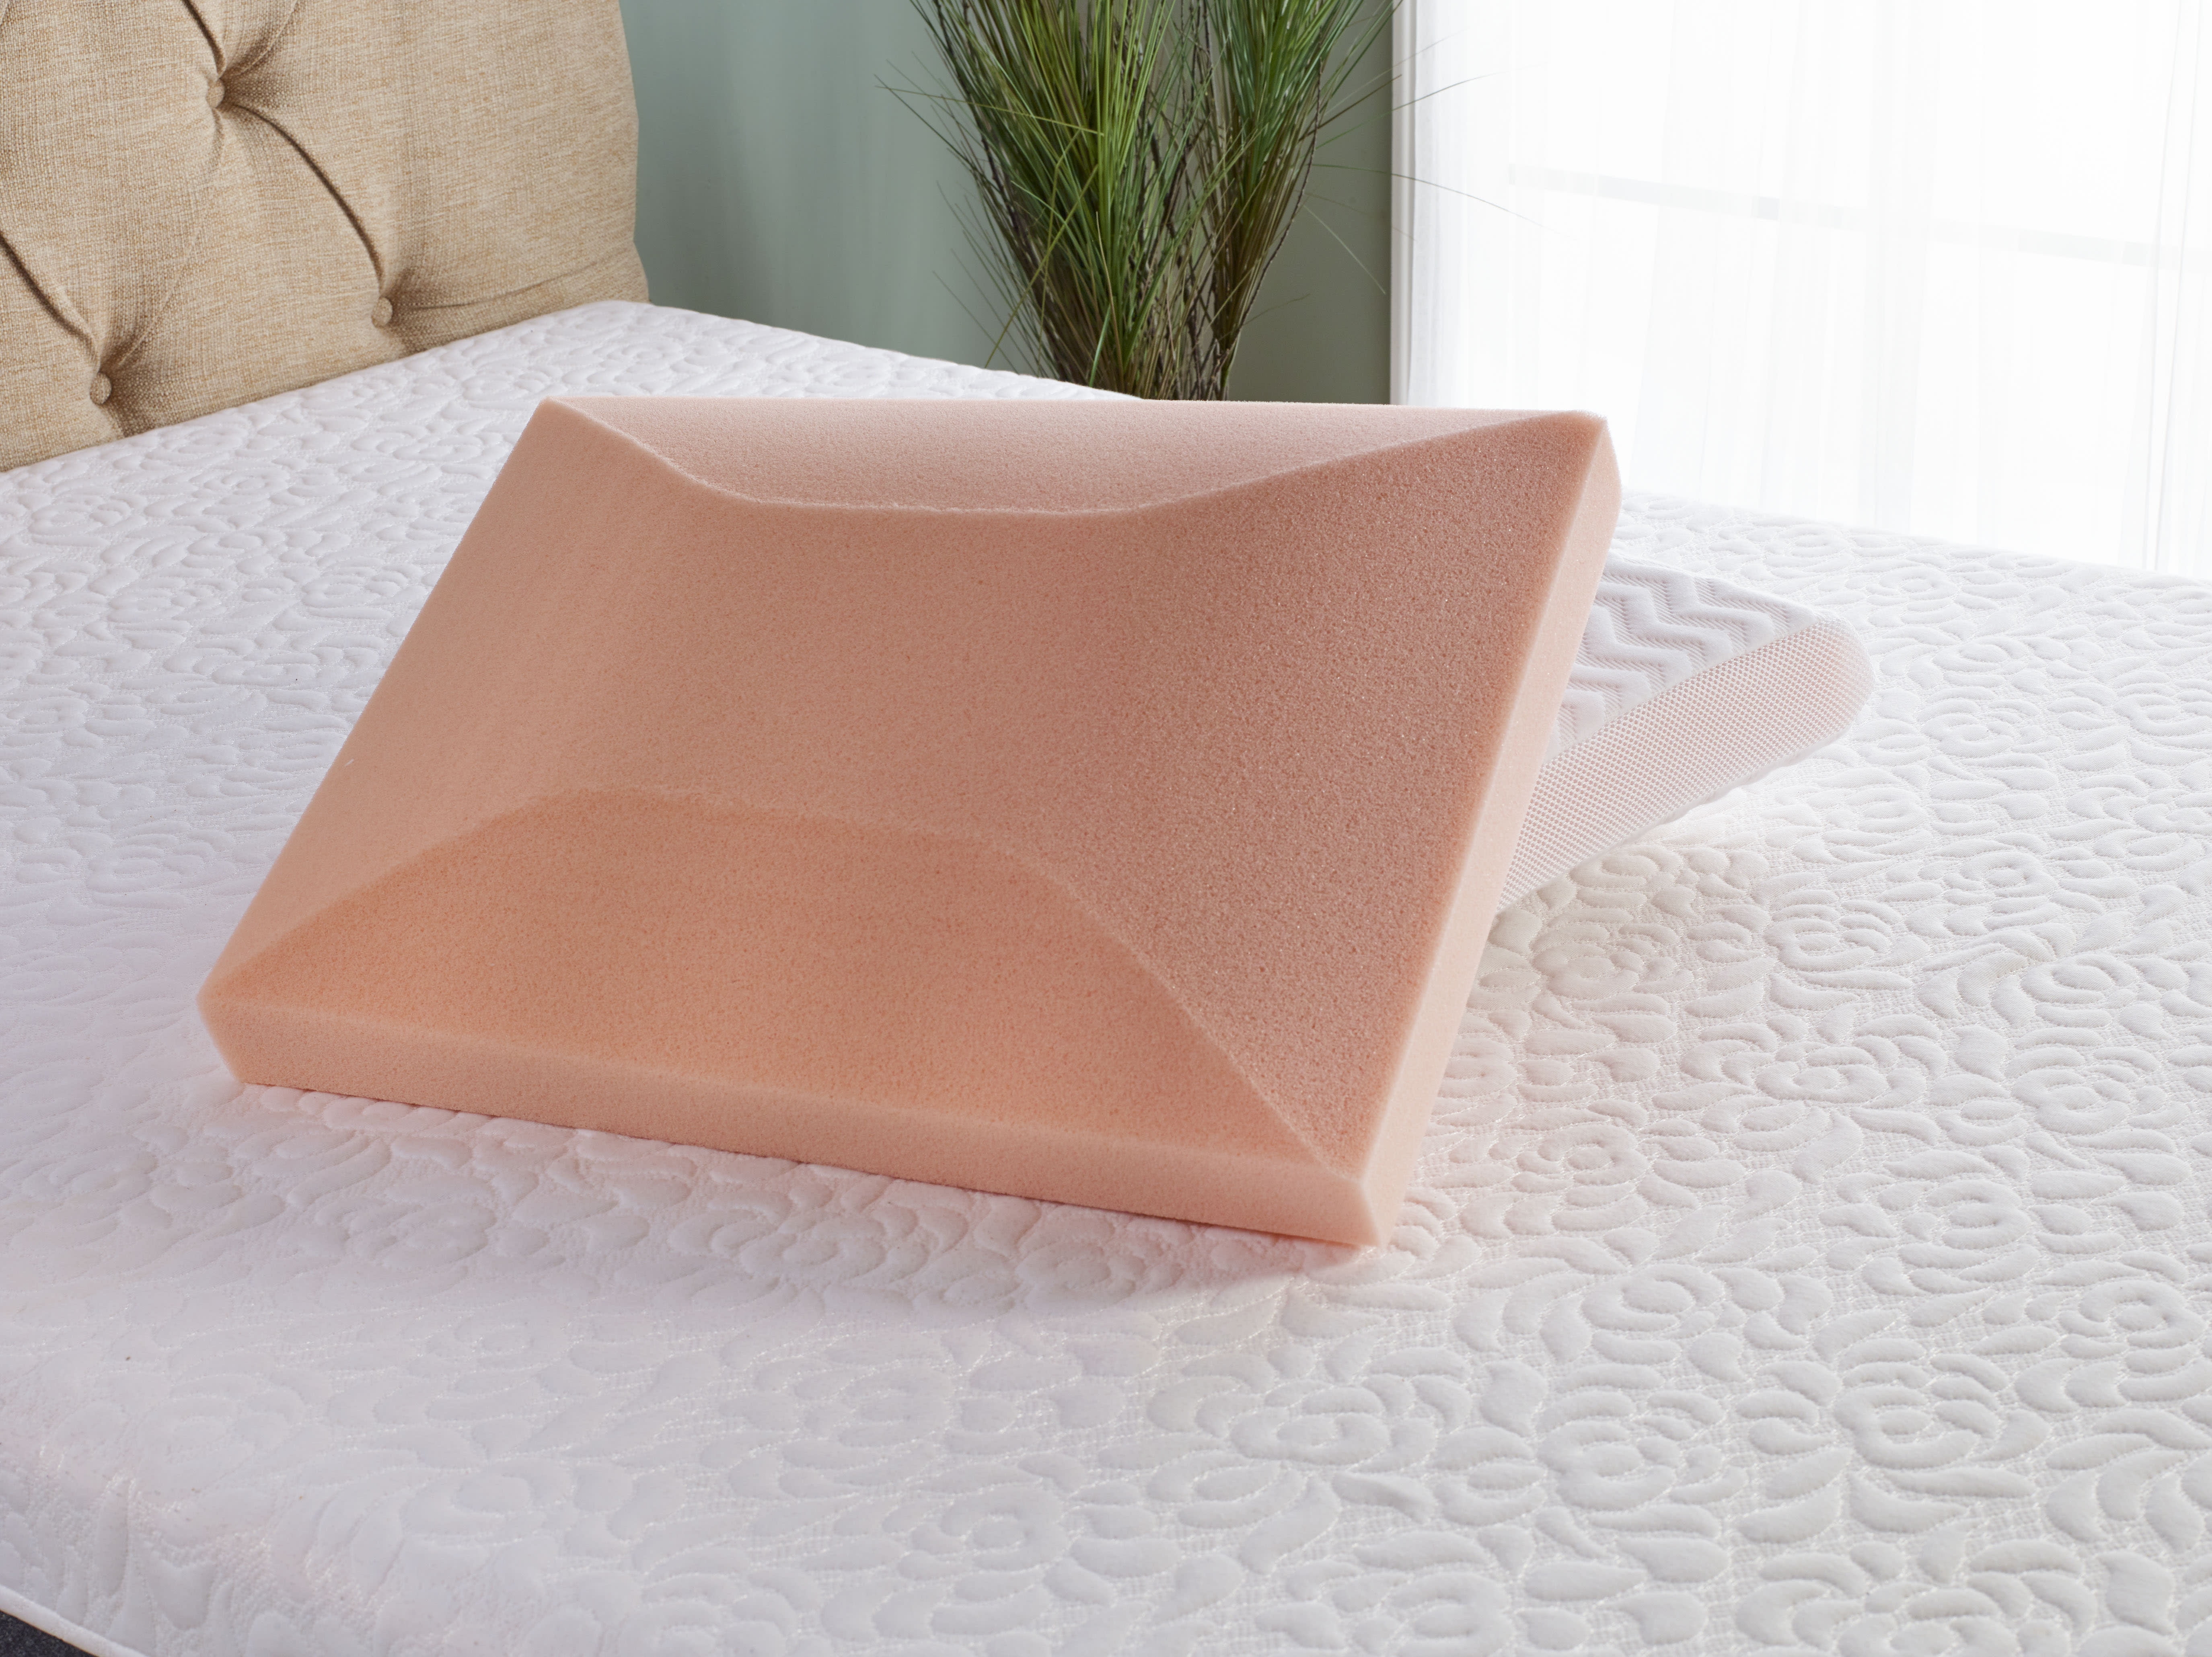 Comfort Tech Serene Memory Foam Standard Pillow 031374555933 - The Home  Depot